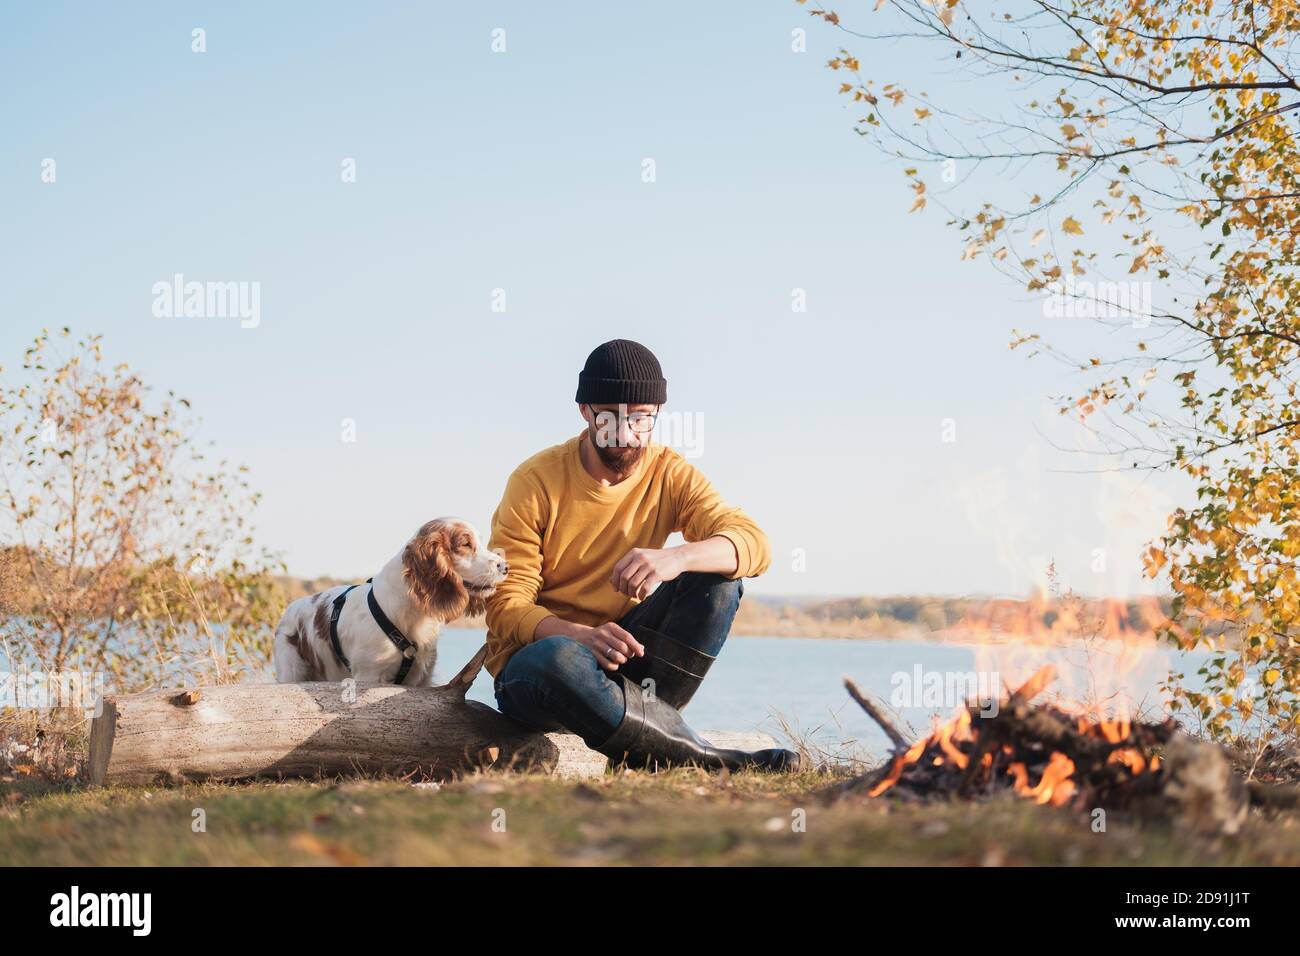 L'uomo abbraccia il suo cane seduto accanto al lago. Riposo attivo con animali domestici, avventure in corso, compagnia: cane spagnolo e il suo proprietario si siedono all'aperto Foto Stock